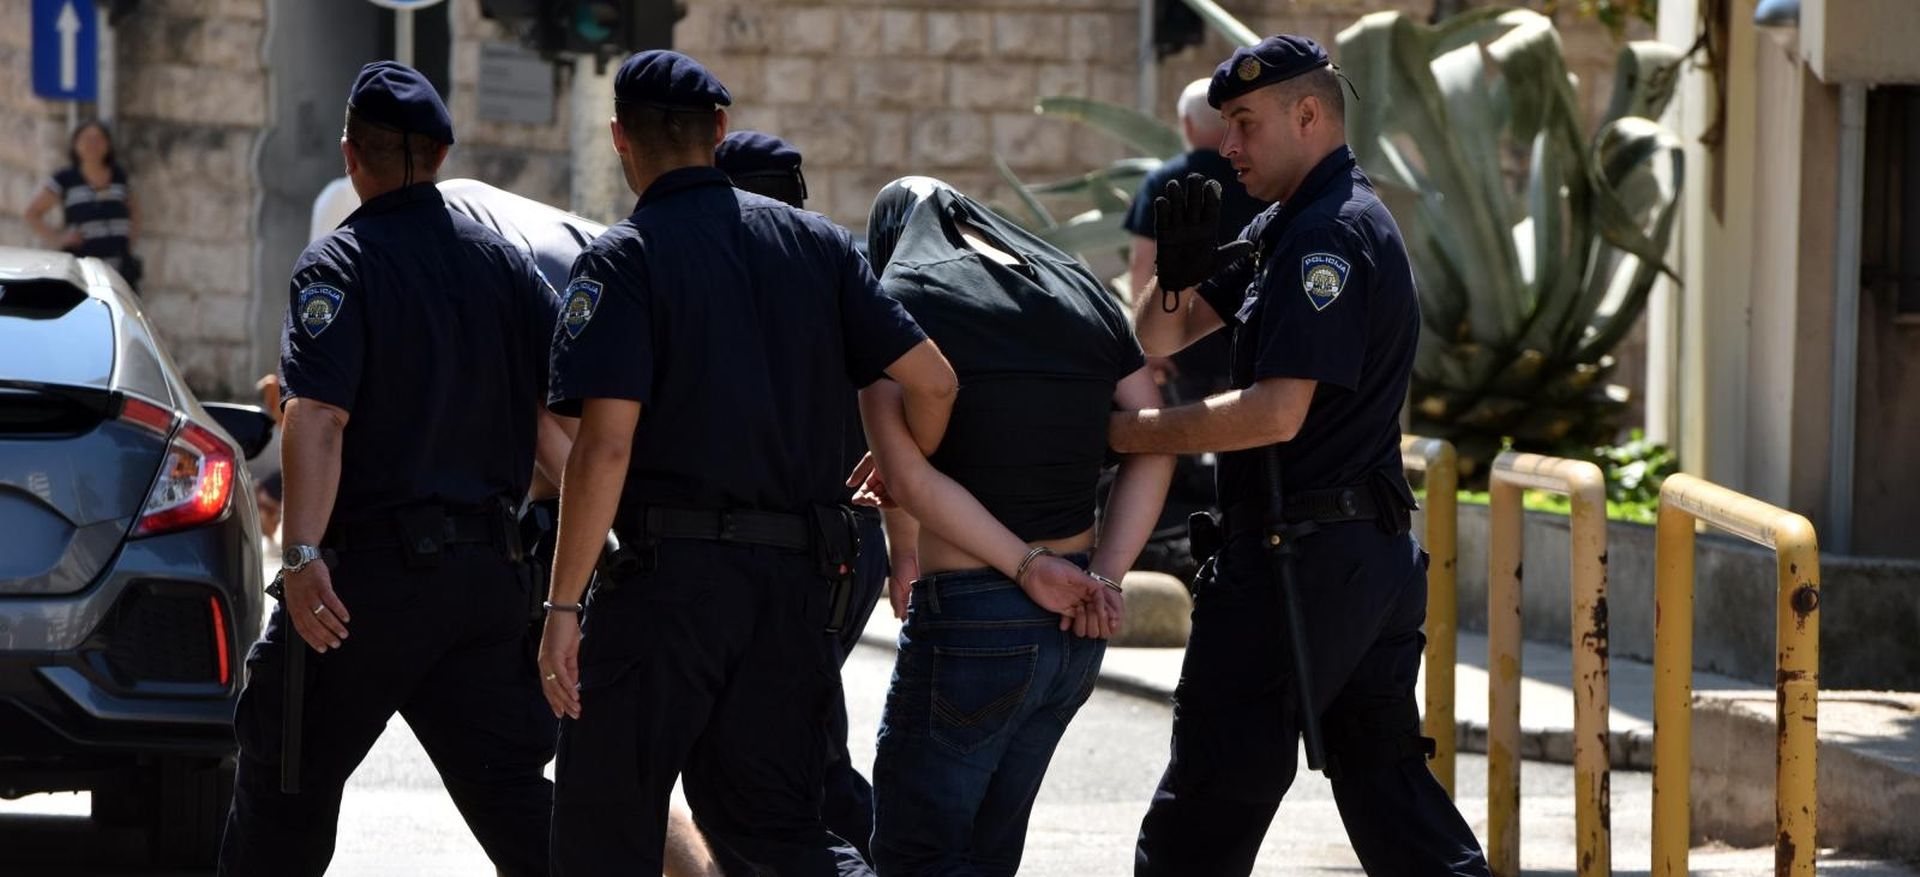 28.08.2019., Sibenik - Privodjenje osumnjicenih u policijsku postaju u Sibeniku. Photo: Hrvoje Jelavic/PIXSELL